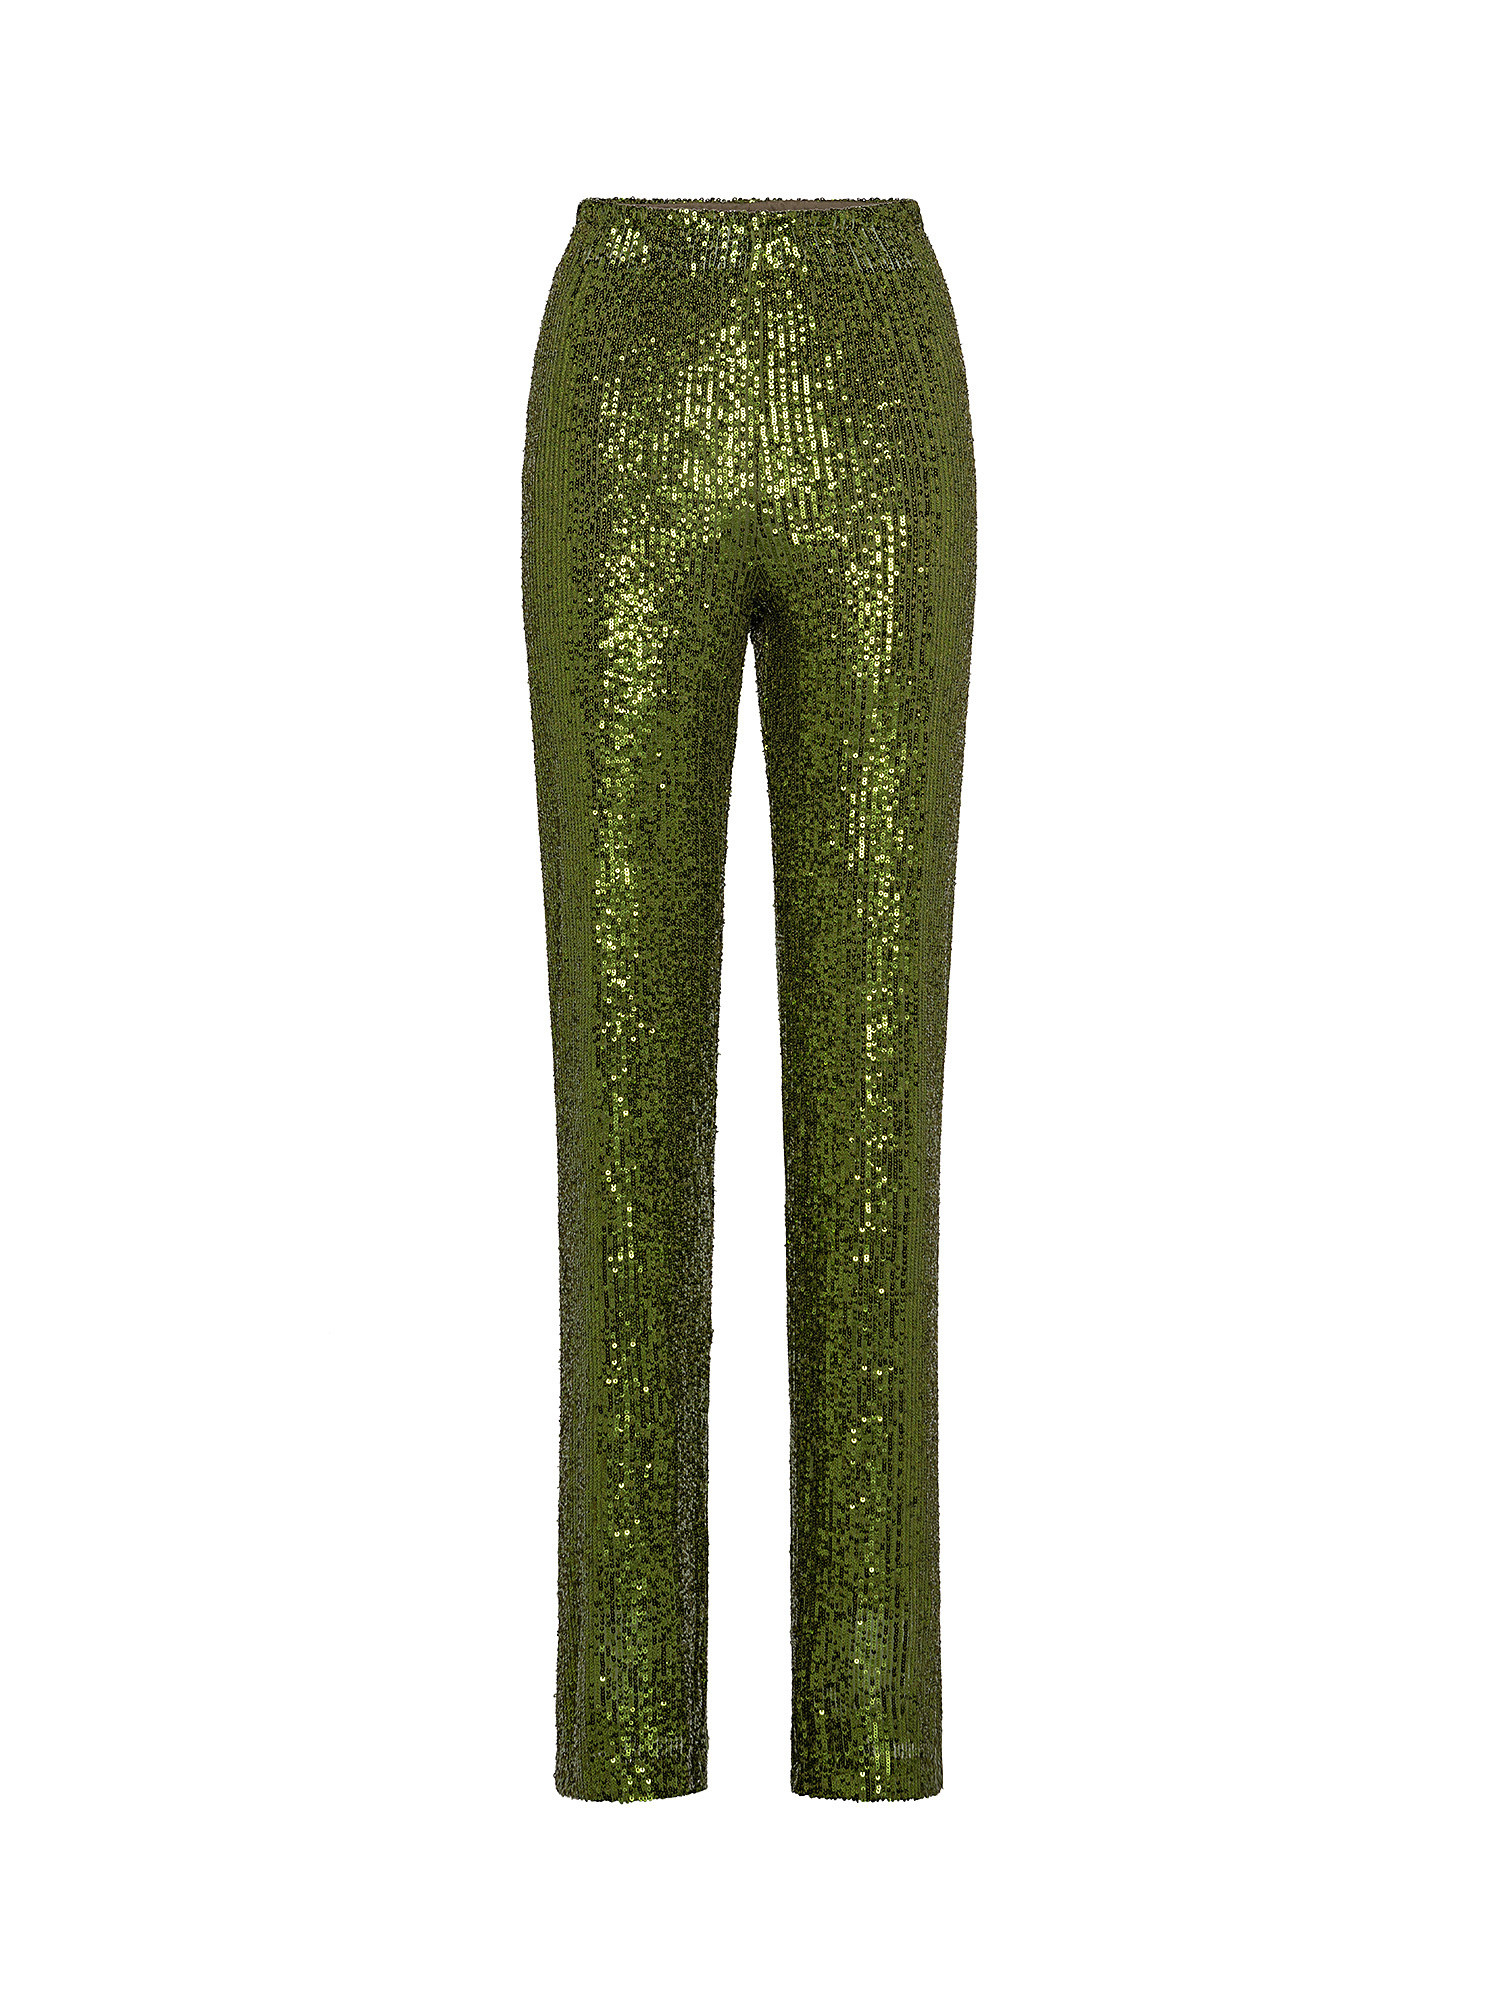 Pantalone con paillettes, Verde, large image number 0